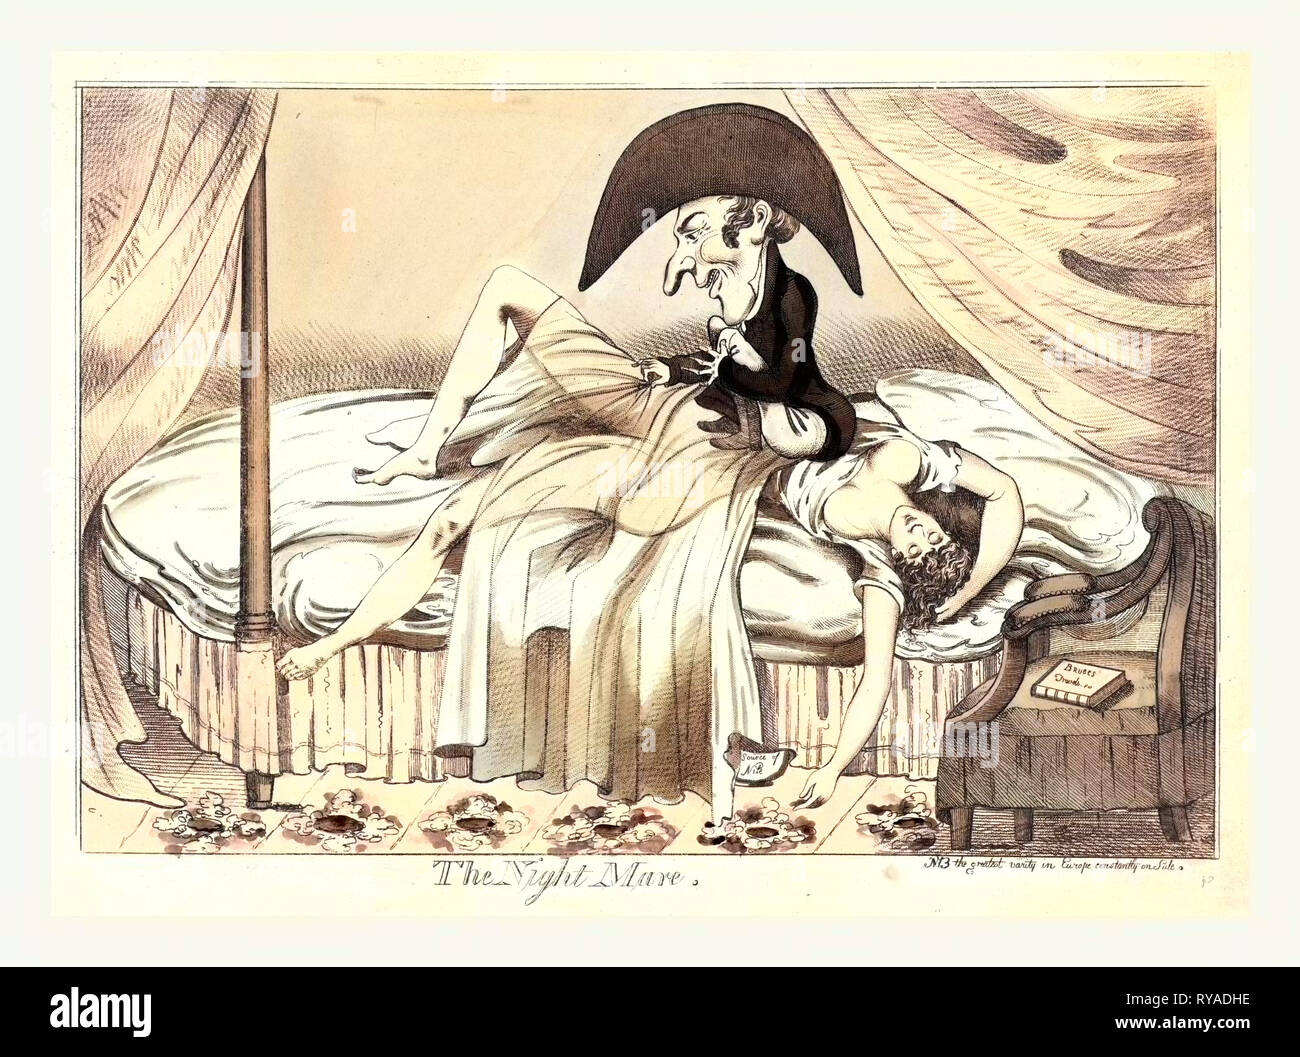 Die Nacht Mare, England Ca. 1790, eine spärlich bekleidete Frau schlafend auf dem Bett, ein kleiner Mann saß auf Ihrer Brust ziehen zurück Ihr see-through abdeckt, als eine Ihrer Waffen hängt auf dem Boden in der Nähe einer Kammer Topf auf Geschrieben Stockfoto